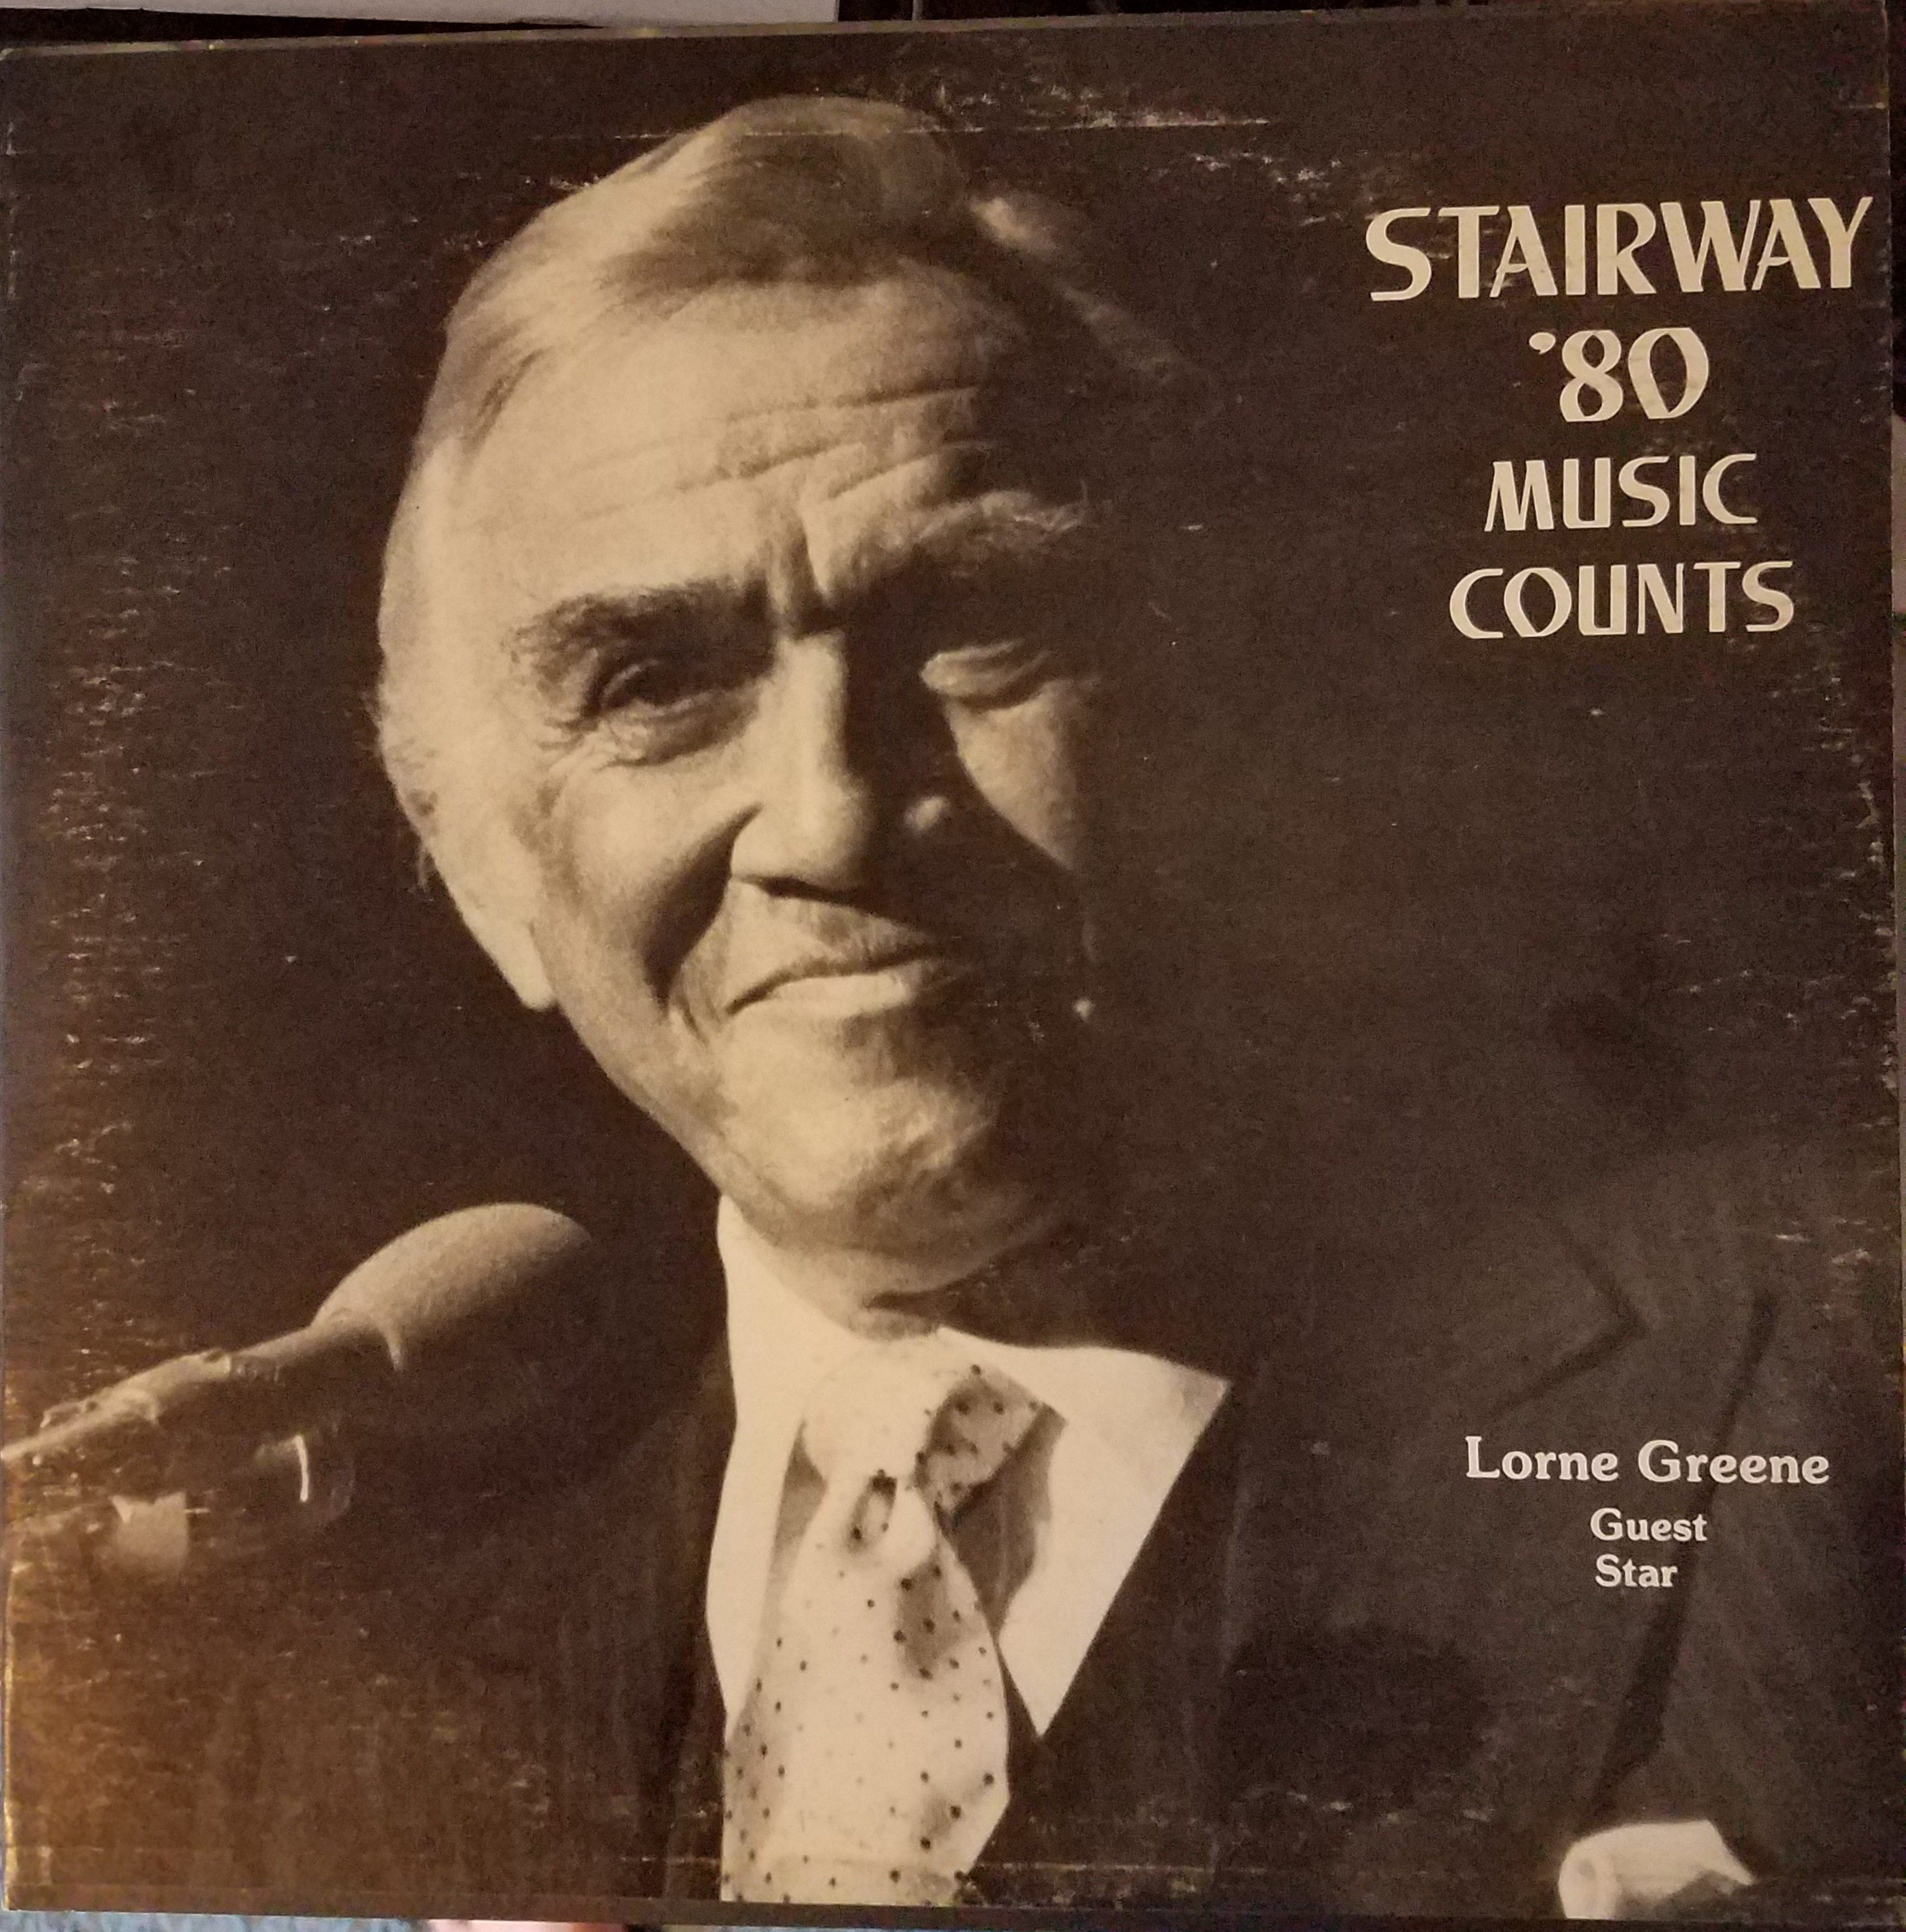 1980 Album cover